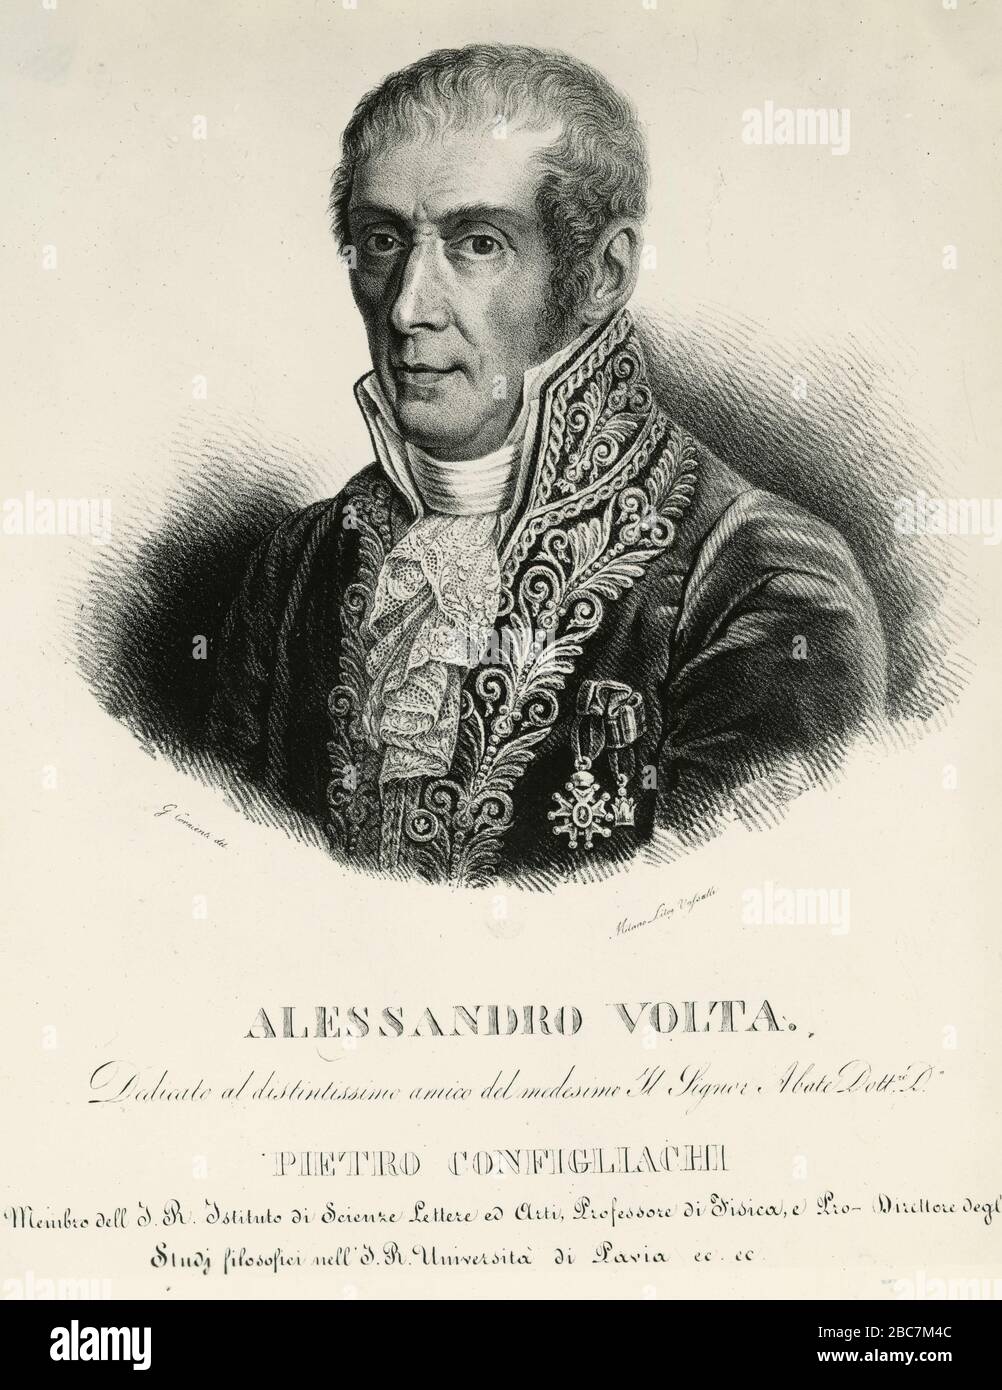 Portray of Italian physicist and chemist Alessandro Volta, Pavia, Italy Stock Photo